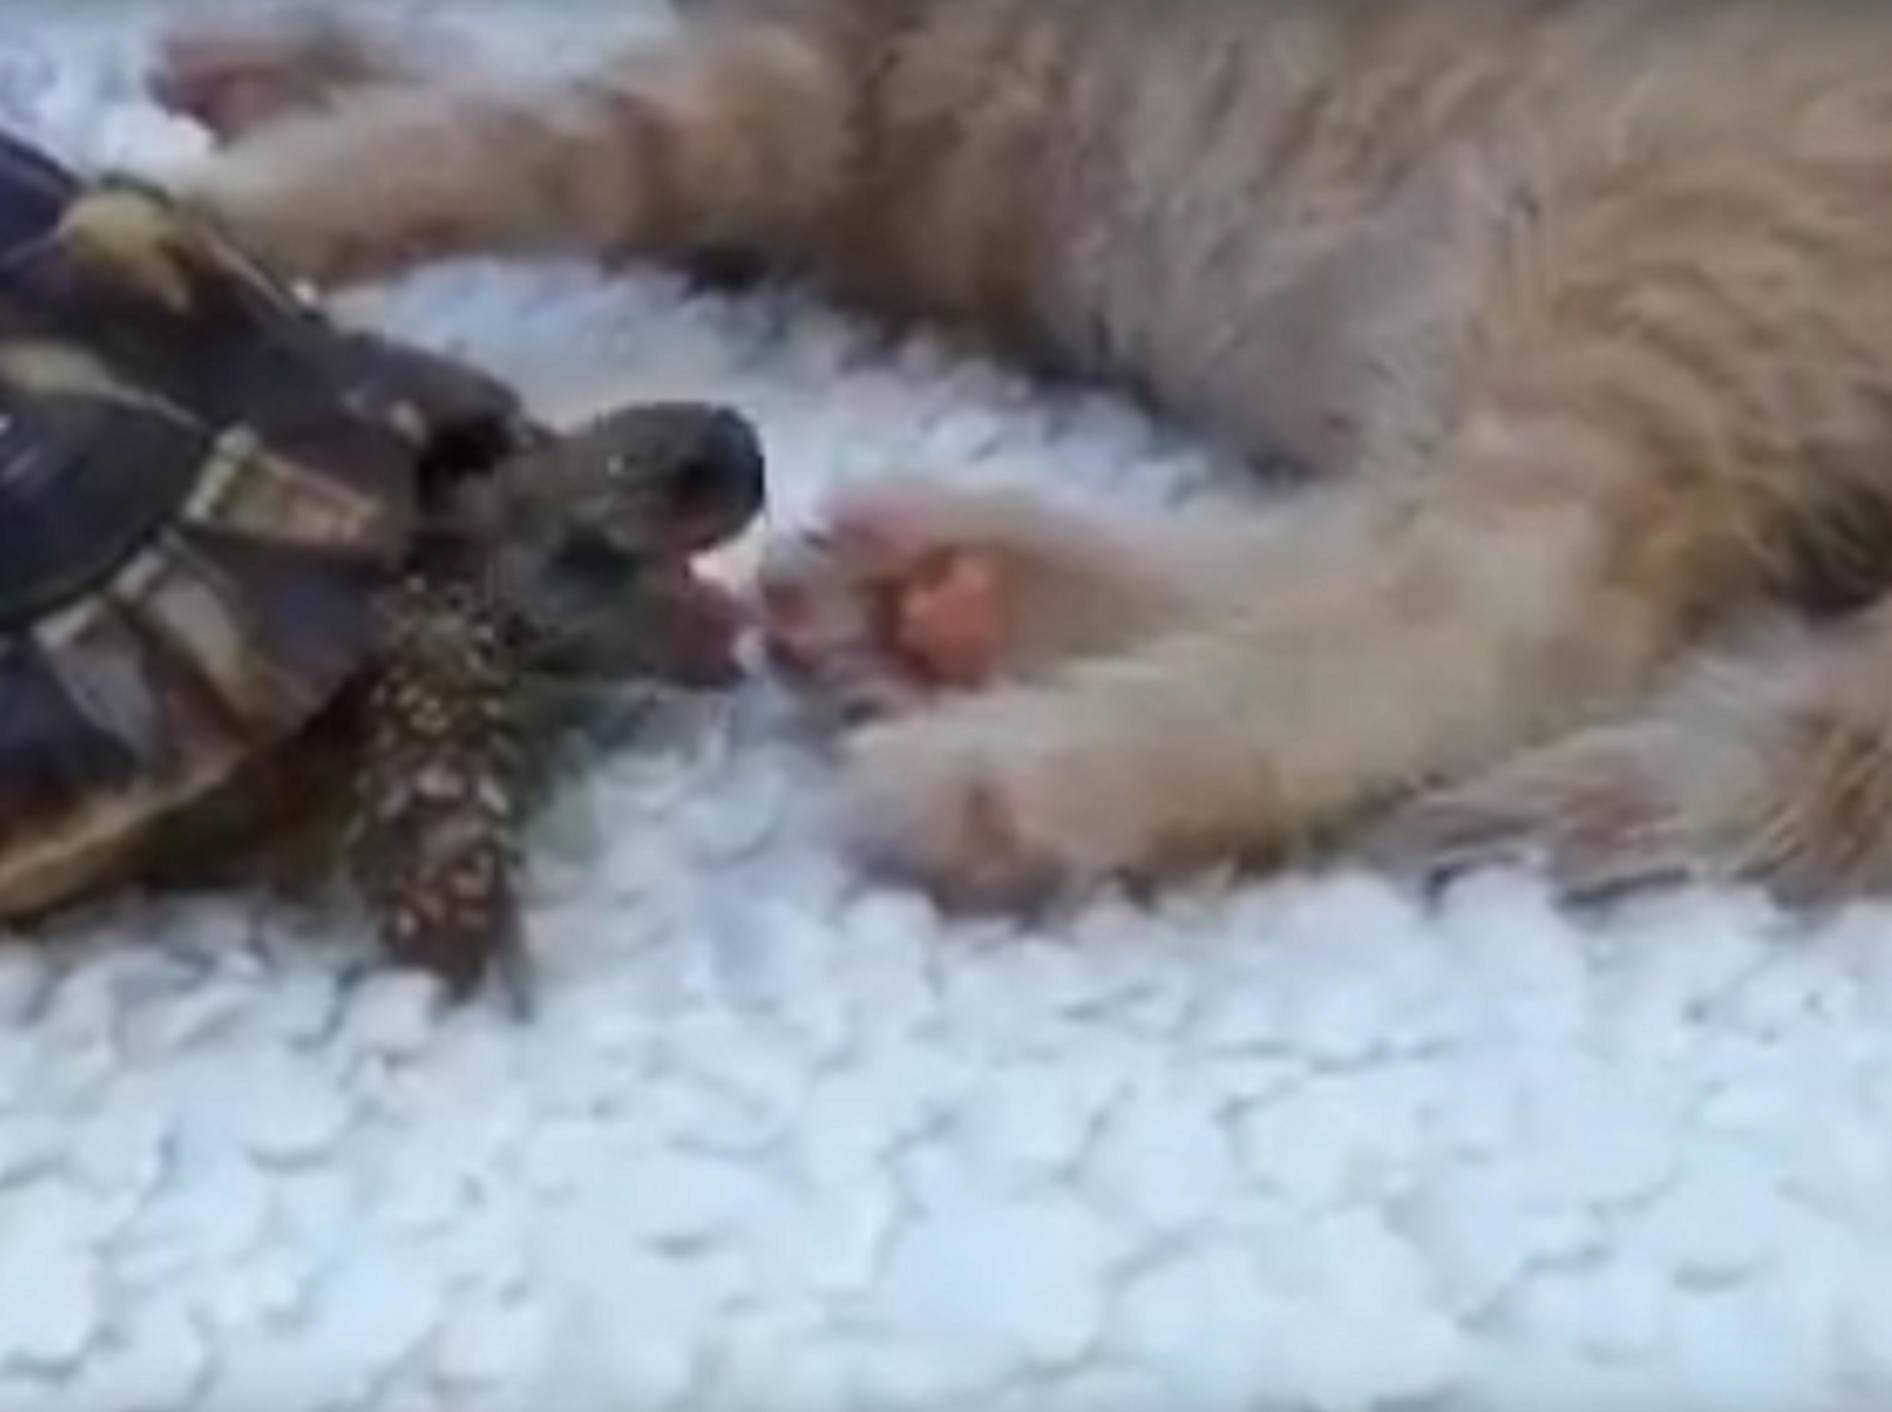 Offenbar schmecken Katzenpfoten lecker – doch keine Angst, hier wird niemand verletzt – e-funnyanimals / YouTube